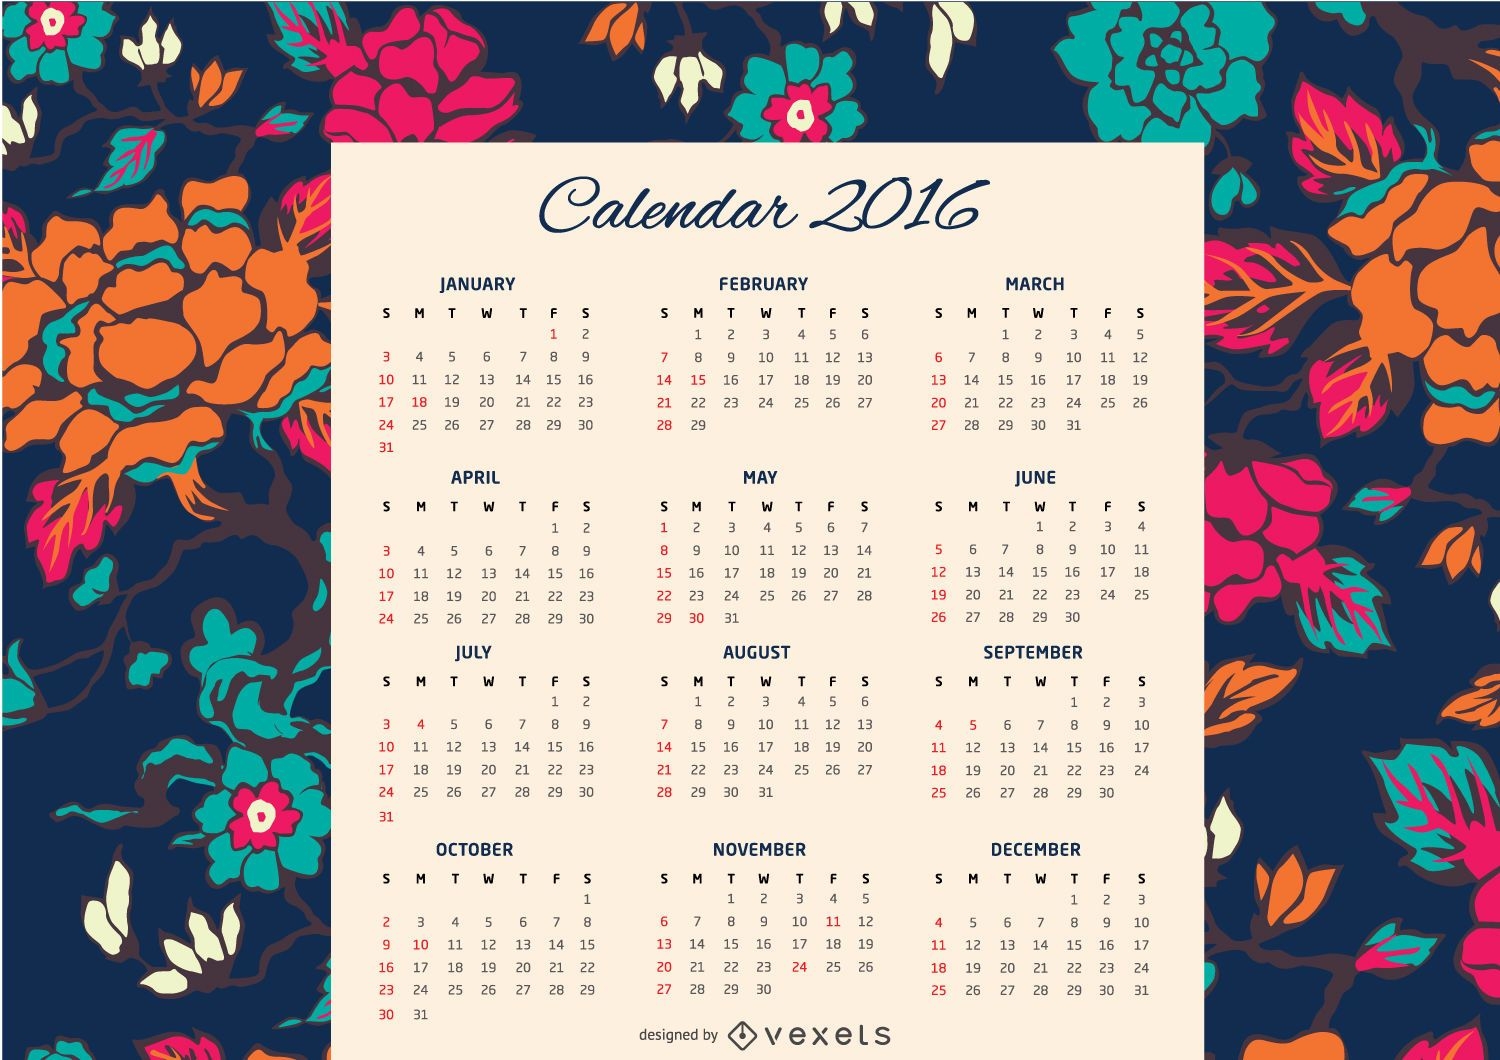 Calendário Floral 2016